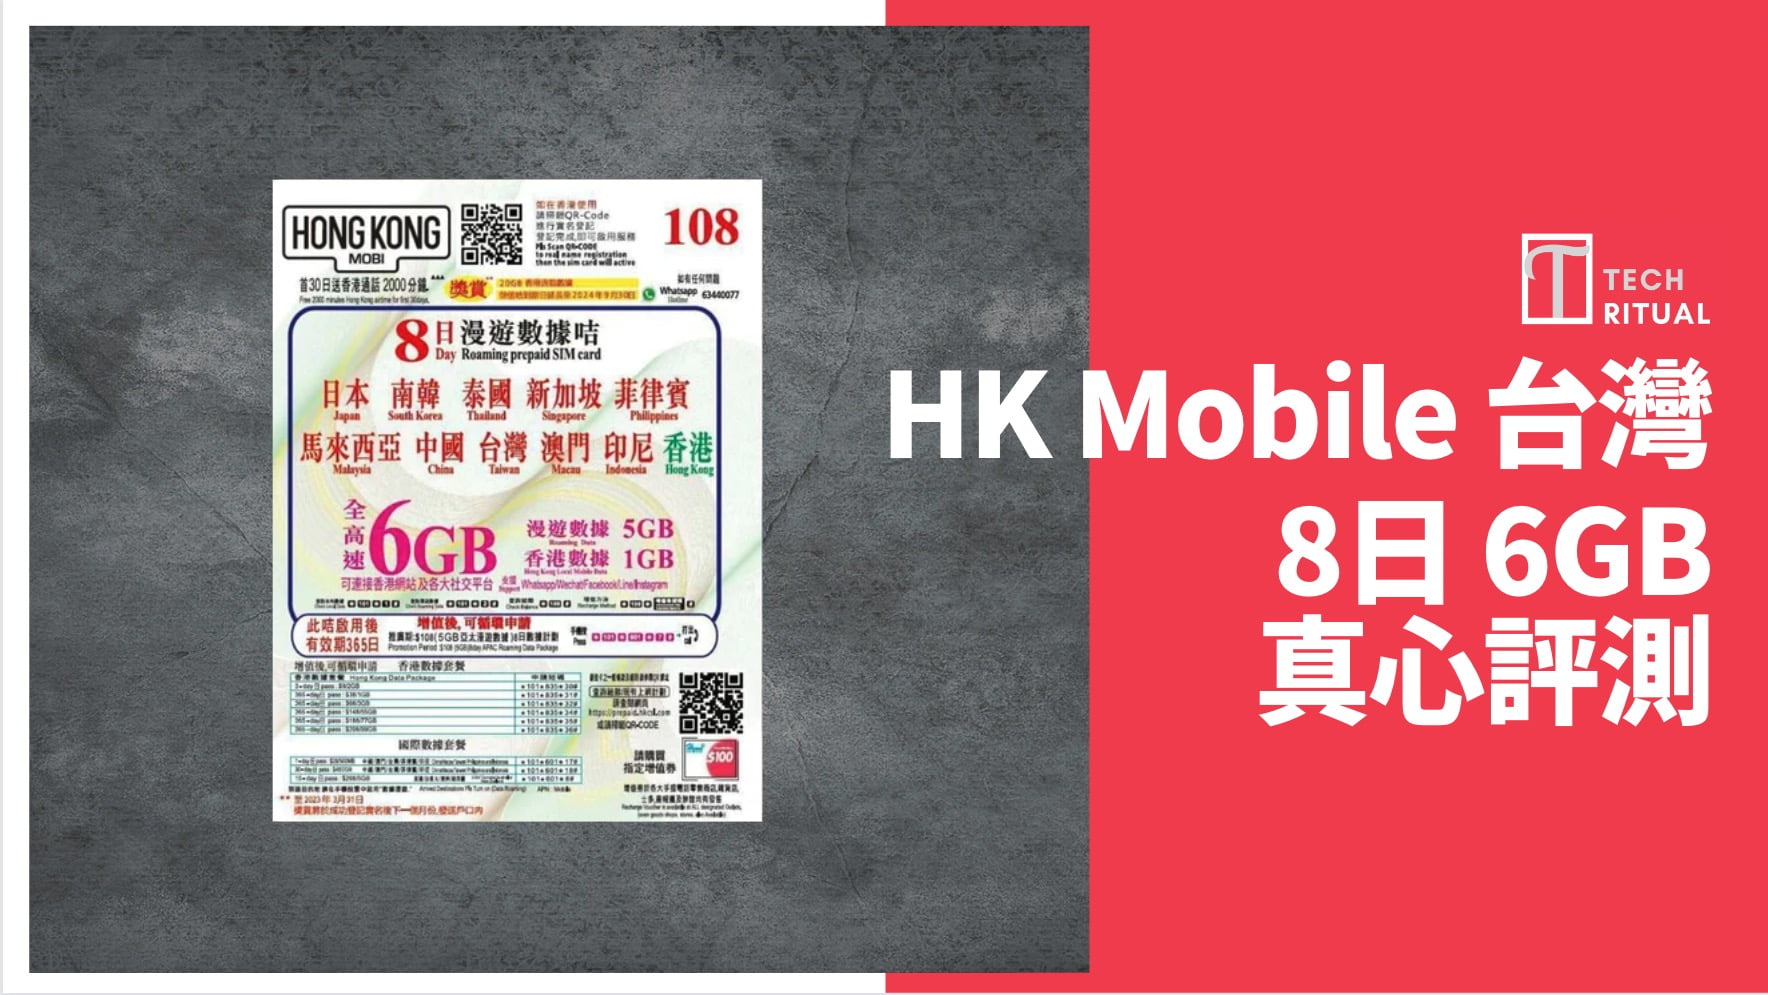 【評測】台灣 電話卡 – HK Mobile  6GB 旅遊儲值8 天，速度達 45.8Mbps